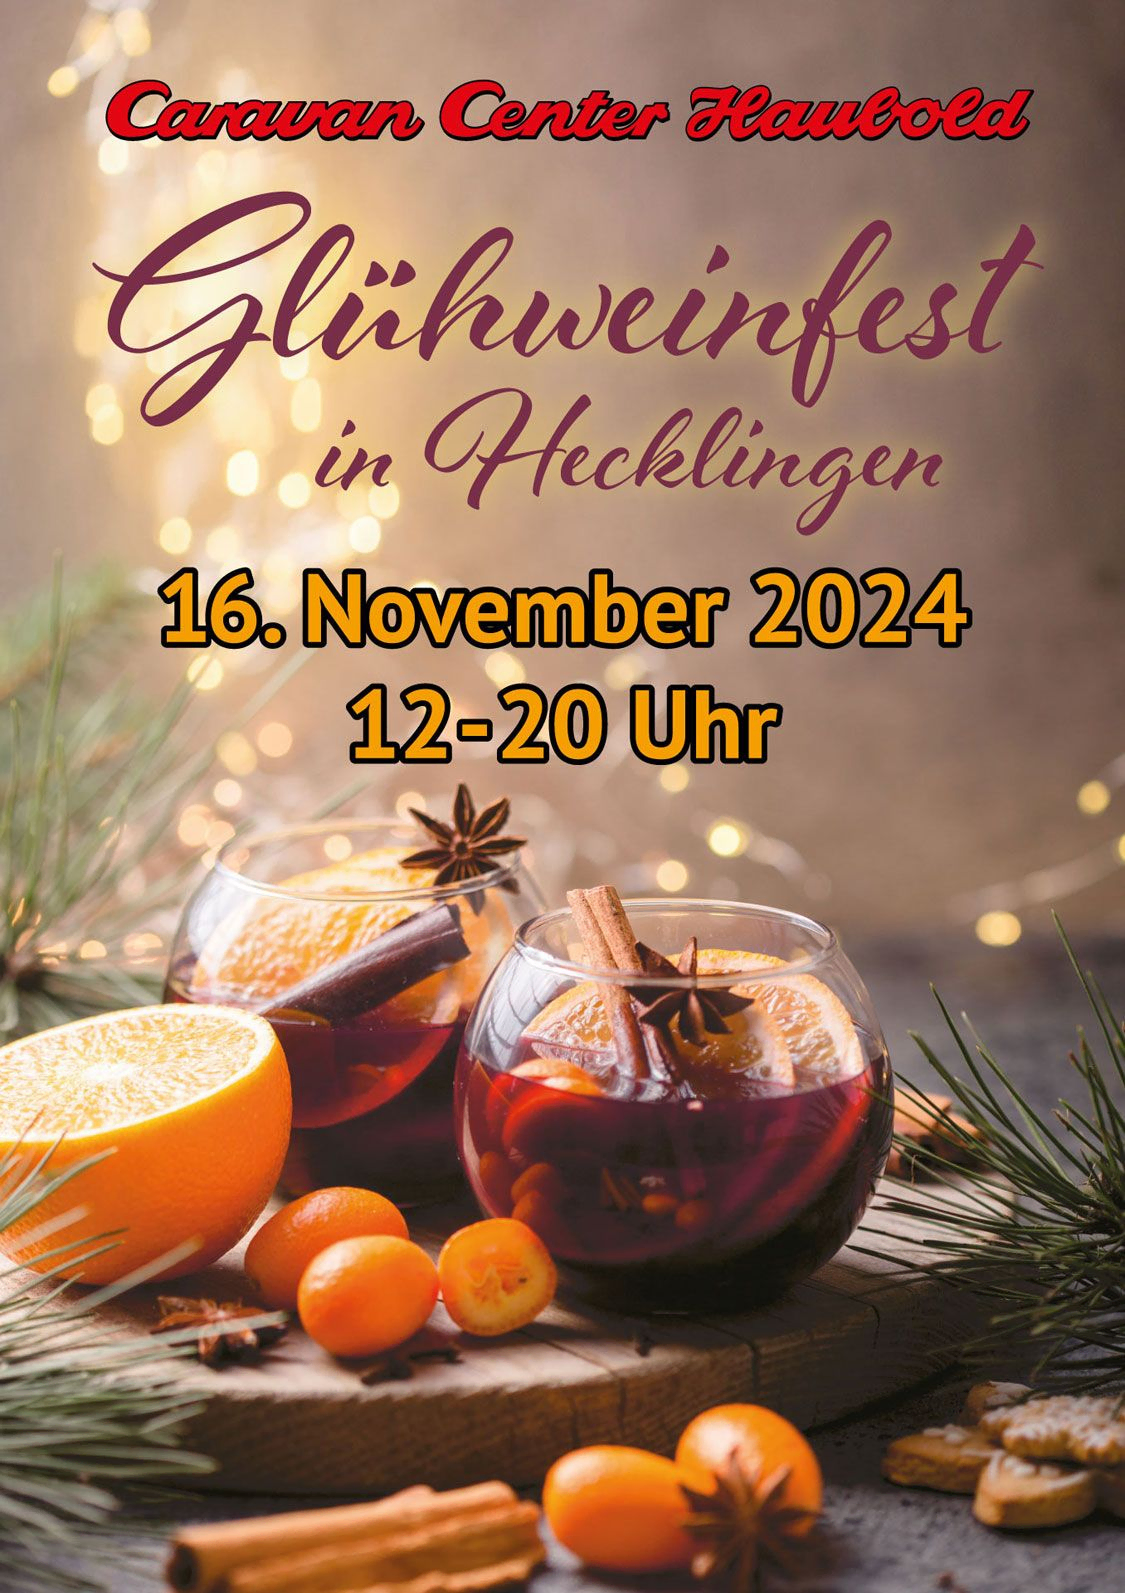 Glühweinfest in Hecklingen, 16. November 2024, 12 bis 20 Uhr, Caravan Center Haubold